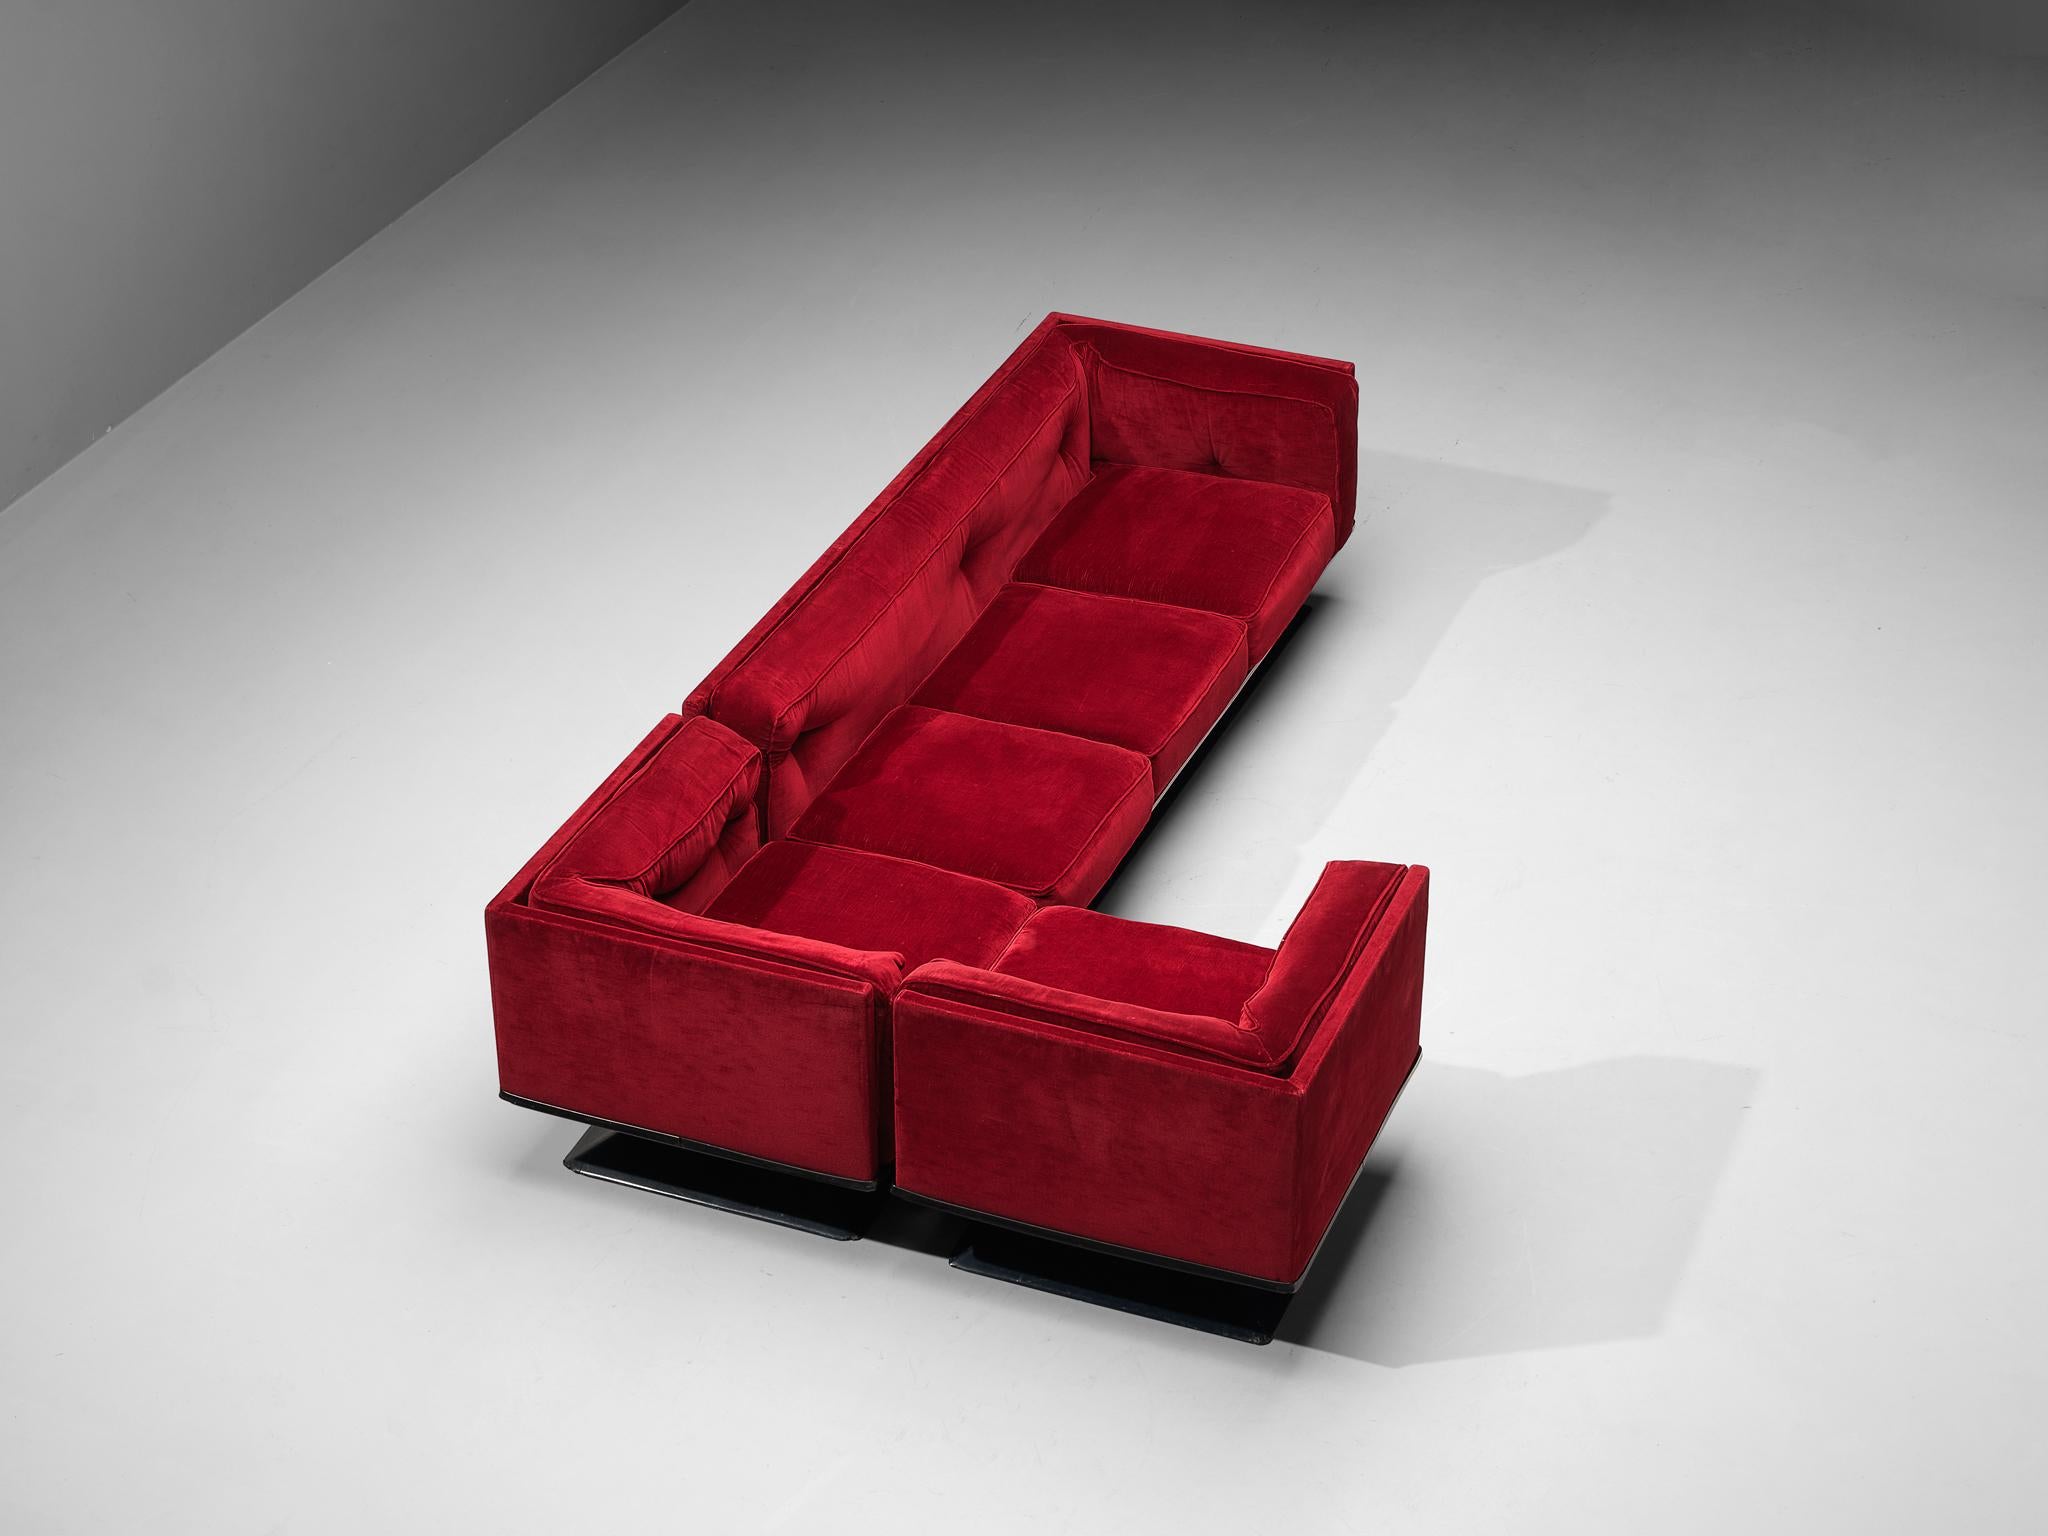 Luigi Pellegrin pour MIM Roma, canapé modulaire, velours, métal, polyester, Italie, années 1950.

Cet ensemble de salon polyvalent de Luigi Pellegrin se compose d'un élément régulier et de deux éléments d'angle. Un meuble très polyvalent qui permet